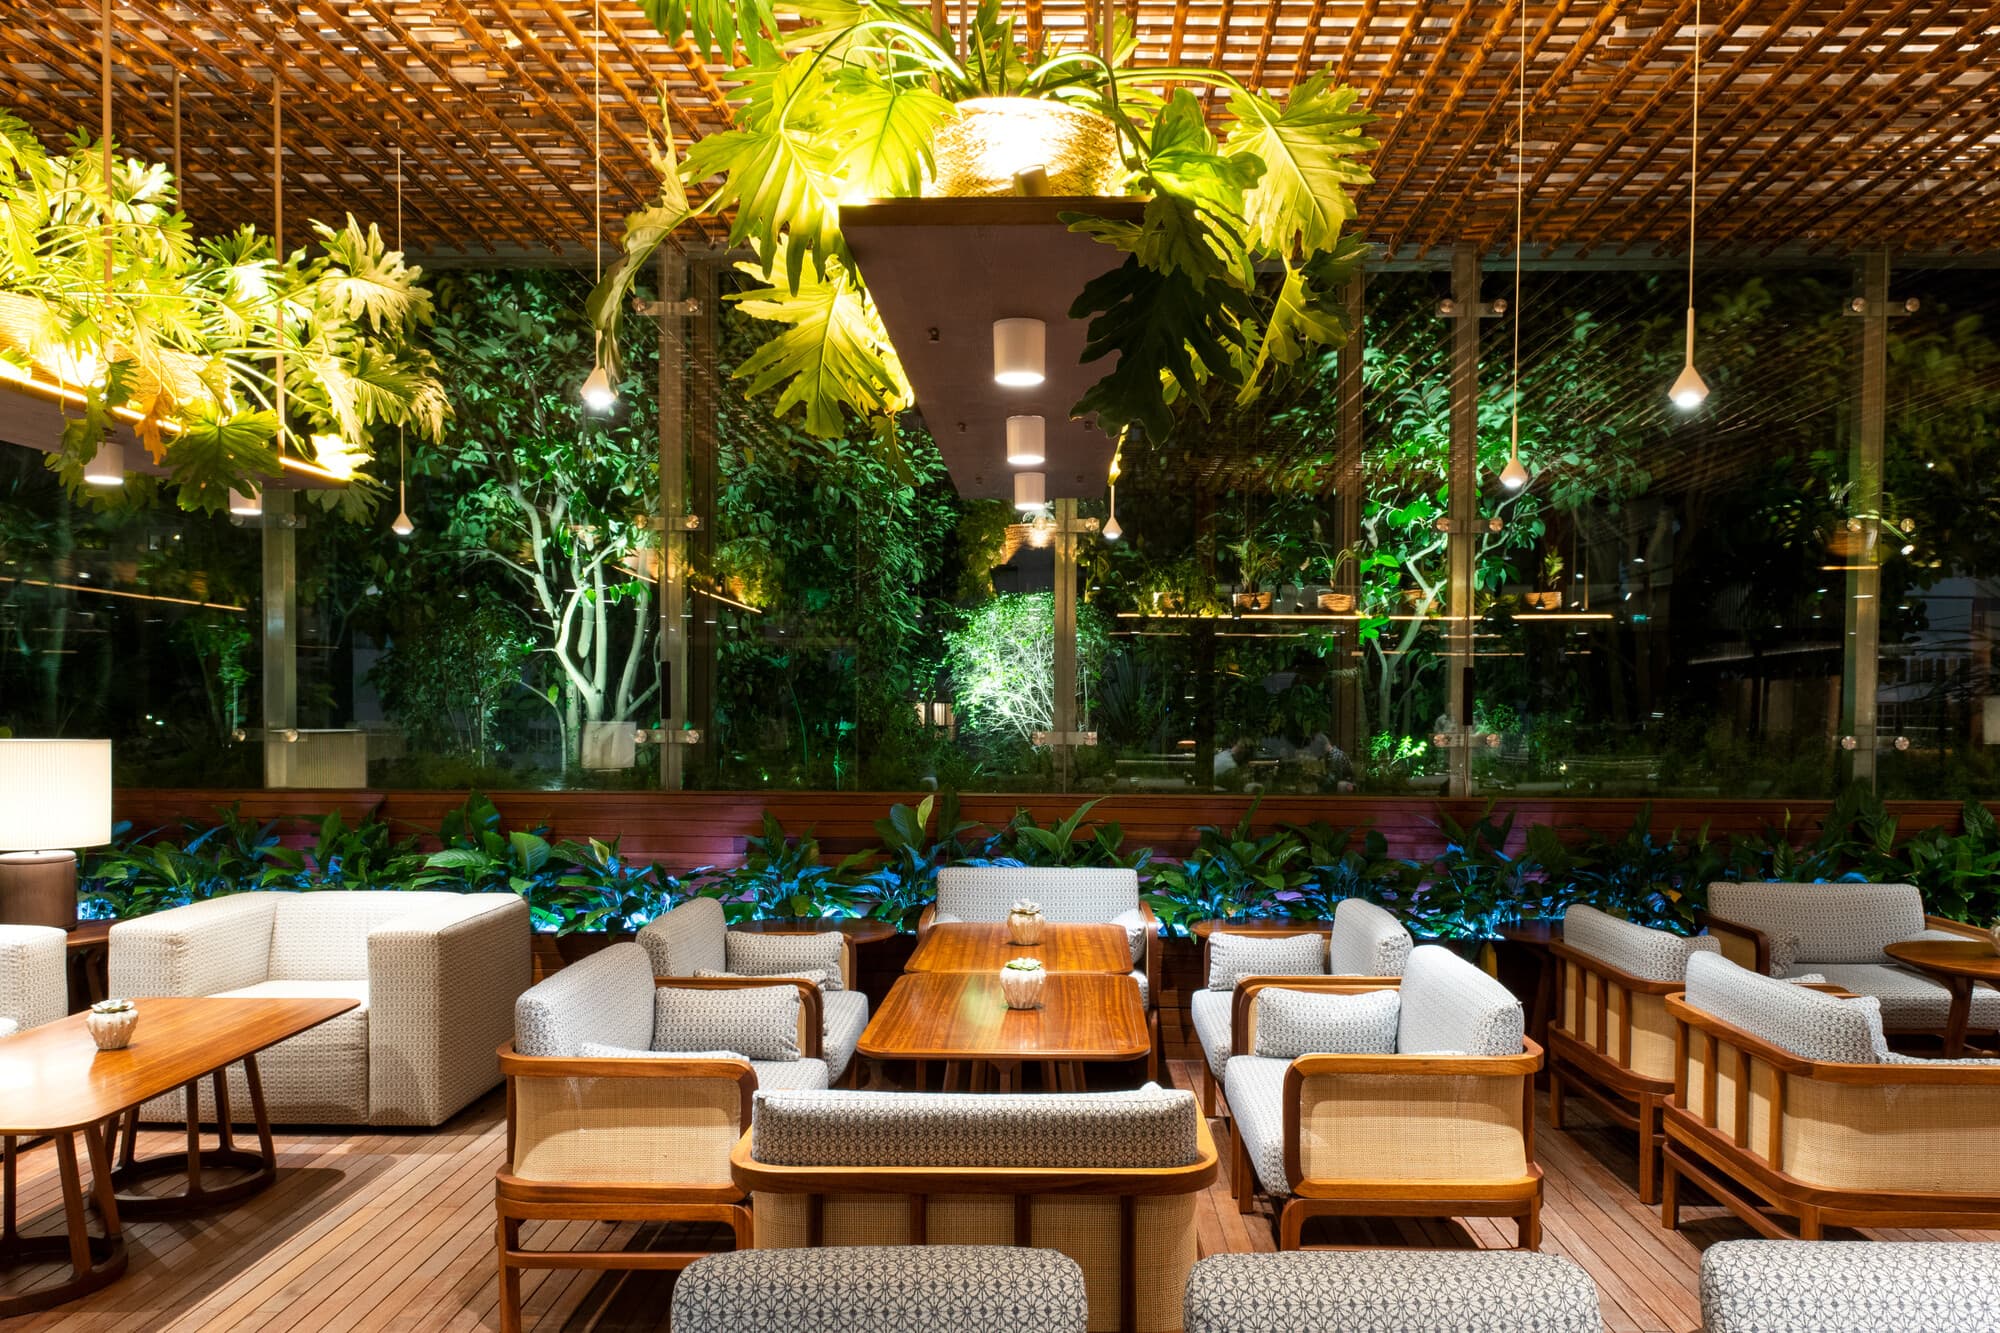 Mediterranean Lounge & Terrace of SANA Malhoa